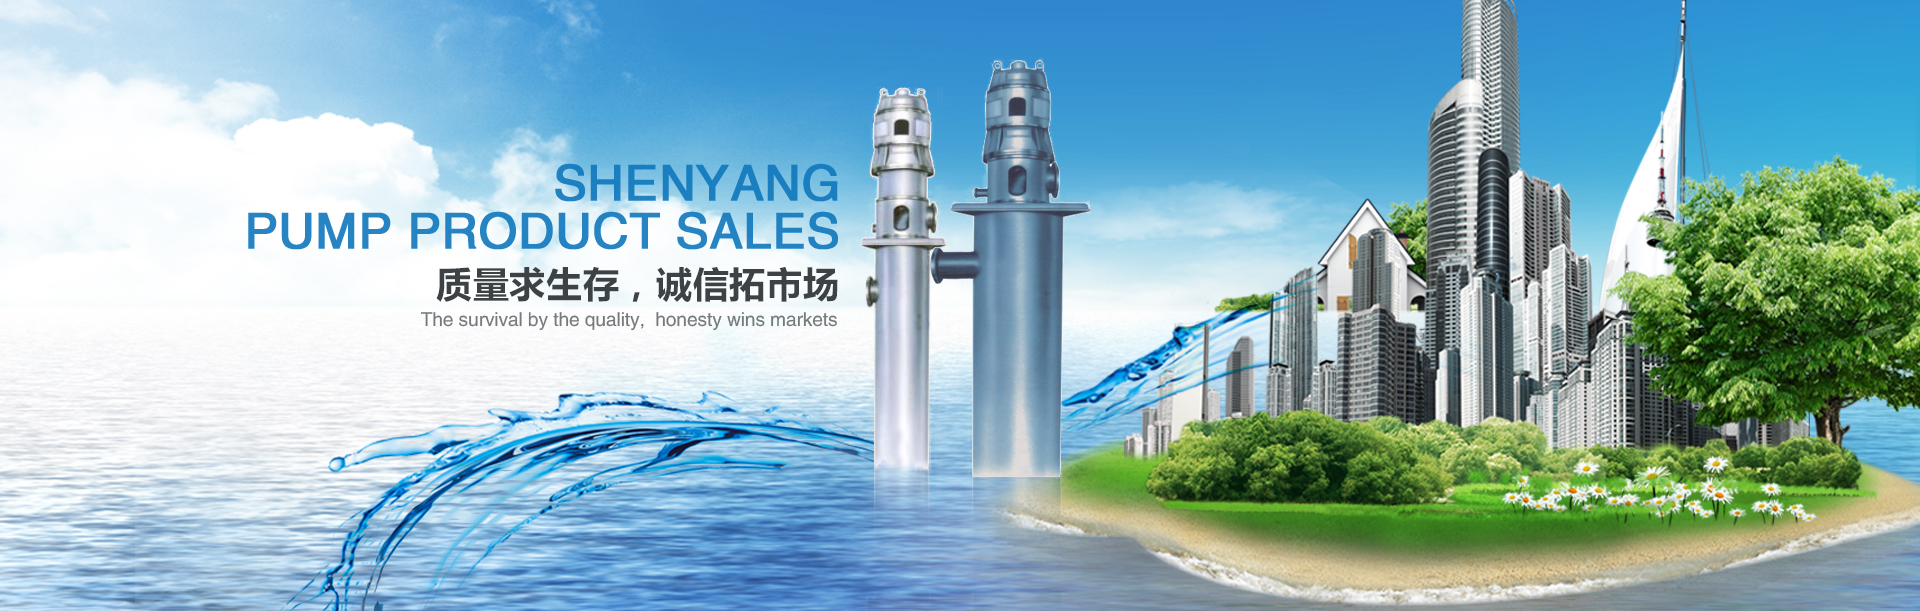 沈阳水泵产品销售有限公司